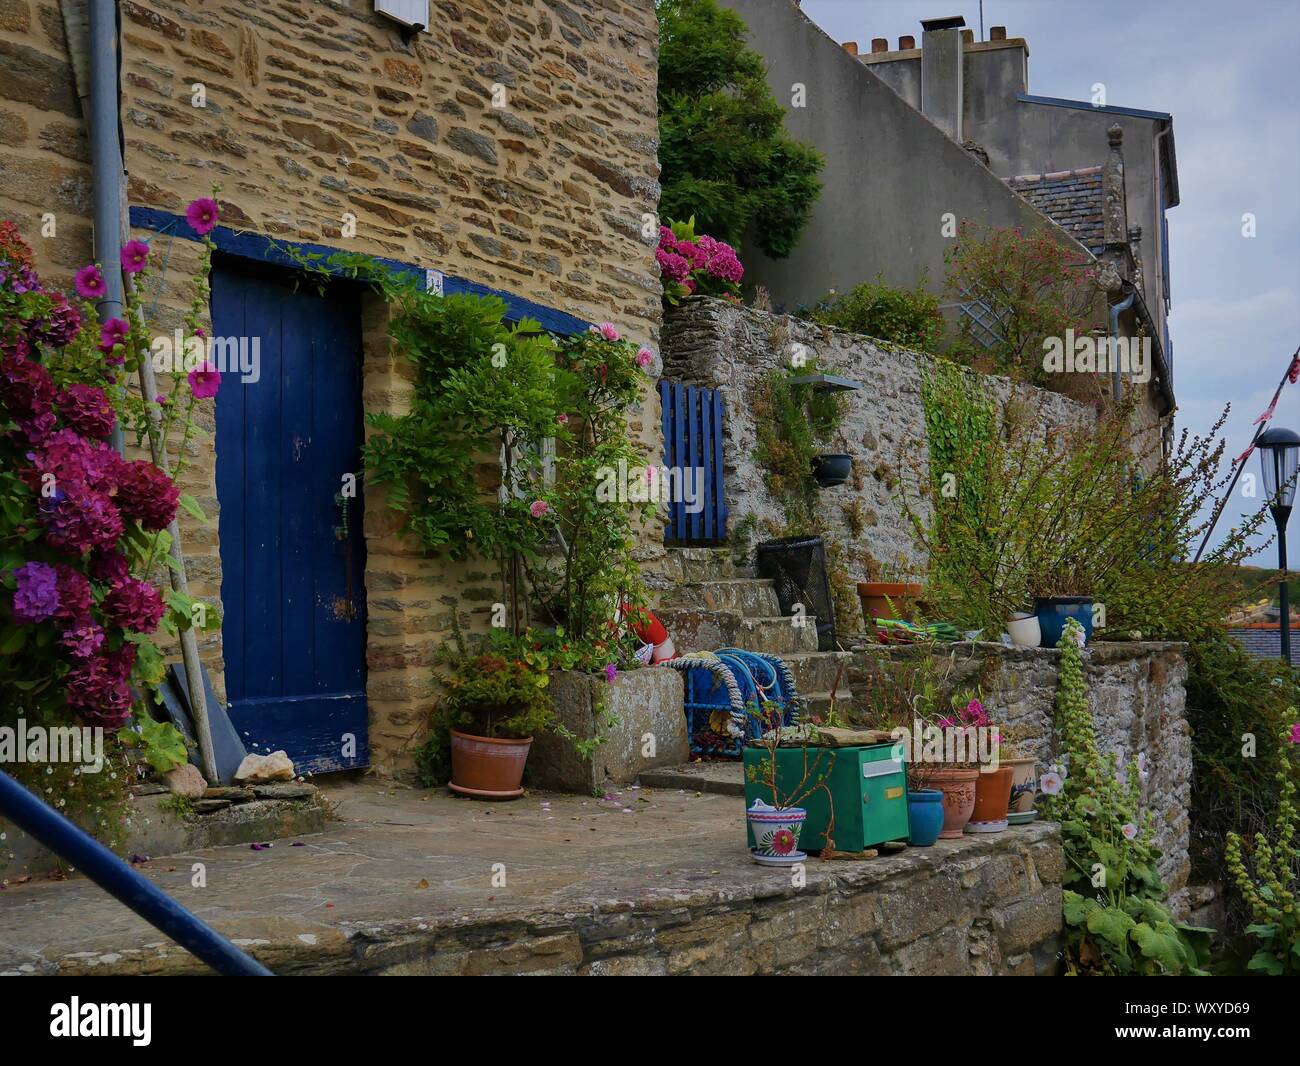 Maison bretonne fleurie d'hortensias avec des accessoires de peche au crustacés , toit en ardoise , casier de peche , le conquet , bretagne Stock Photo